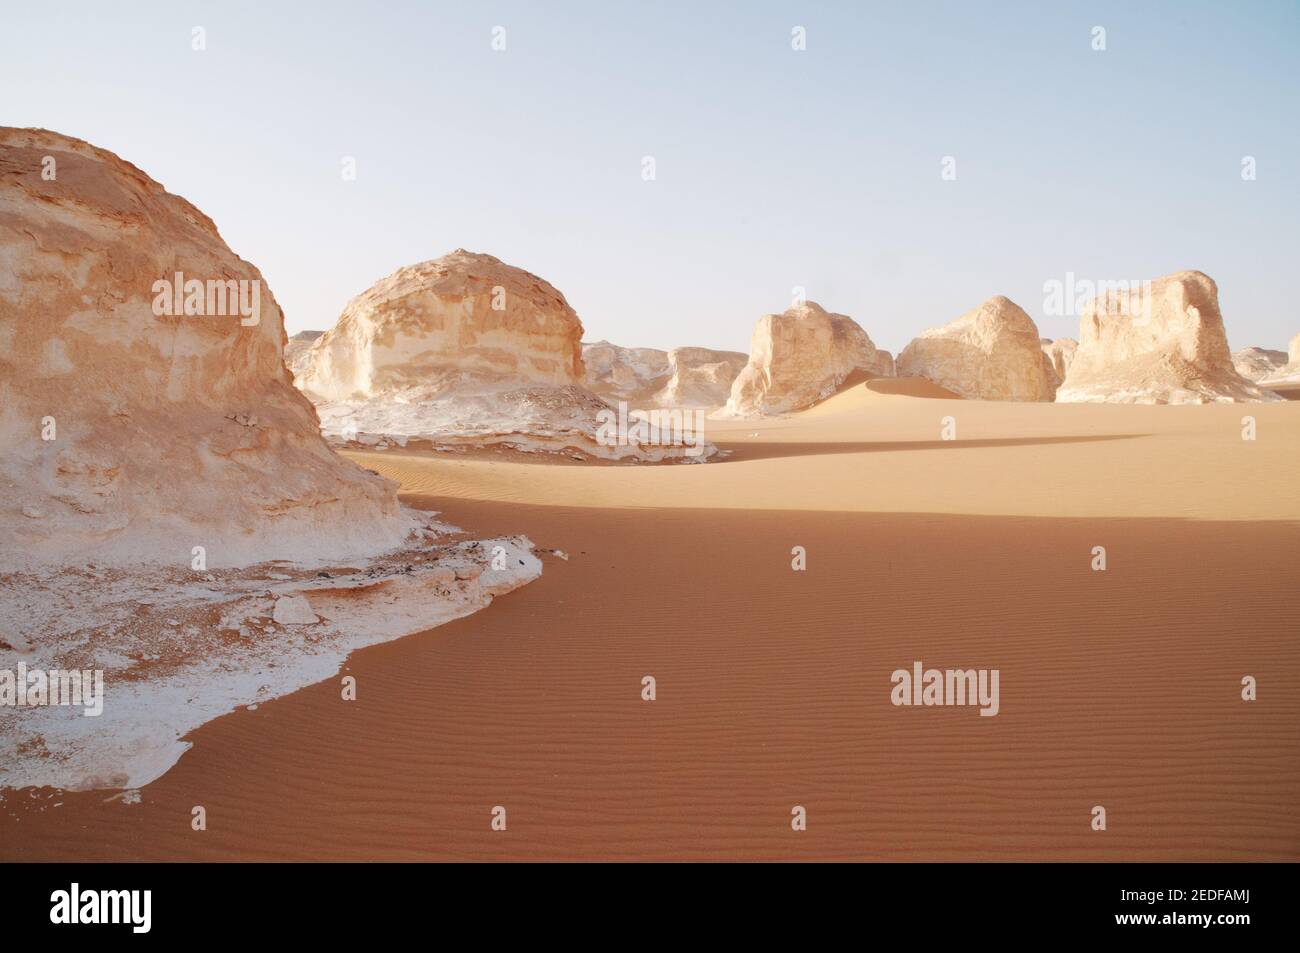 Formazioni rocciose di gesso bianco e inselbergs mescolati con sabbia nel Parco Nazionale del deserto Bianco, nella depressione di Farfara, regione del Sahara, dell'Egitto. Foto Stock